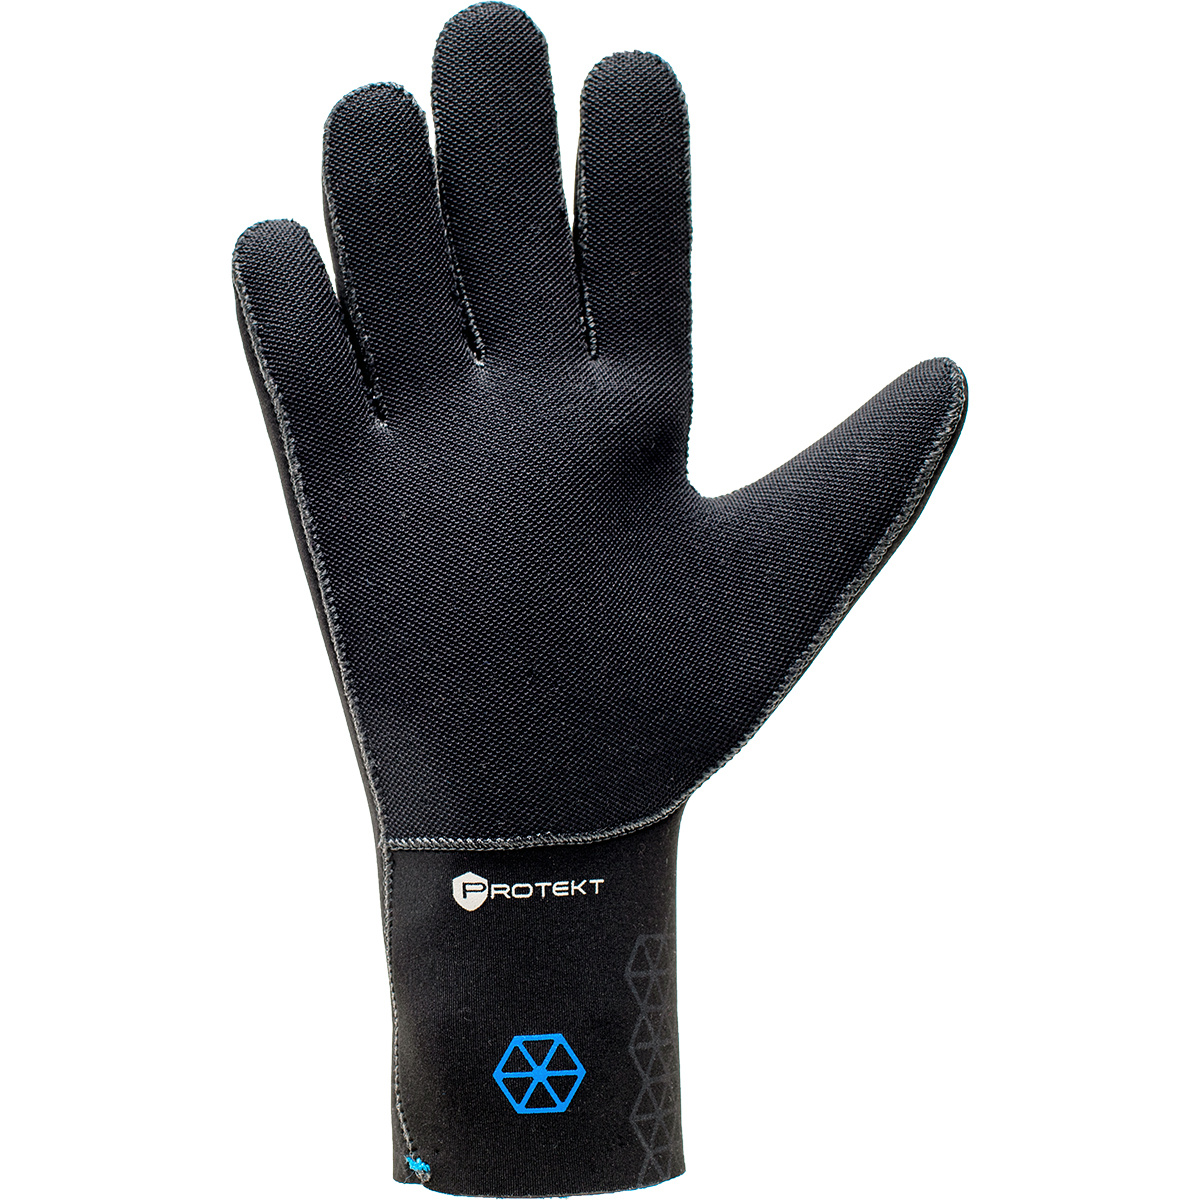 BARE Bare 3mm S-Flex Gloves - Black